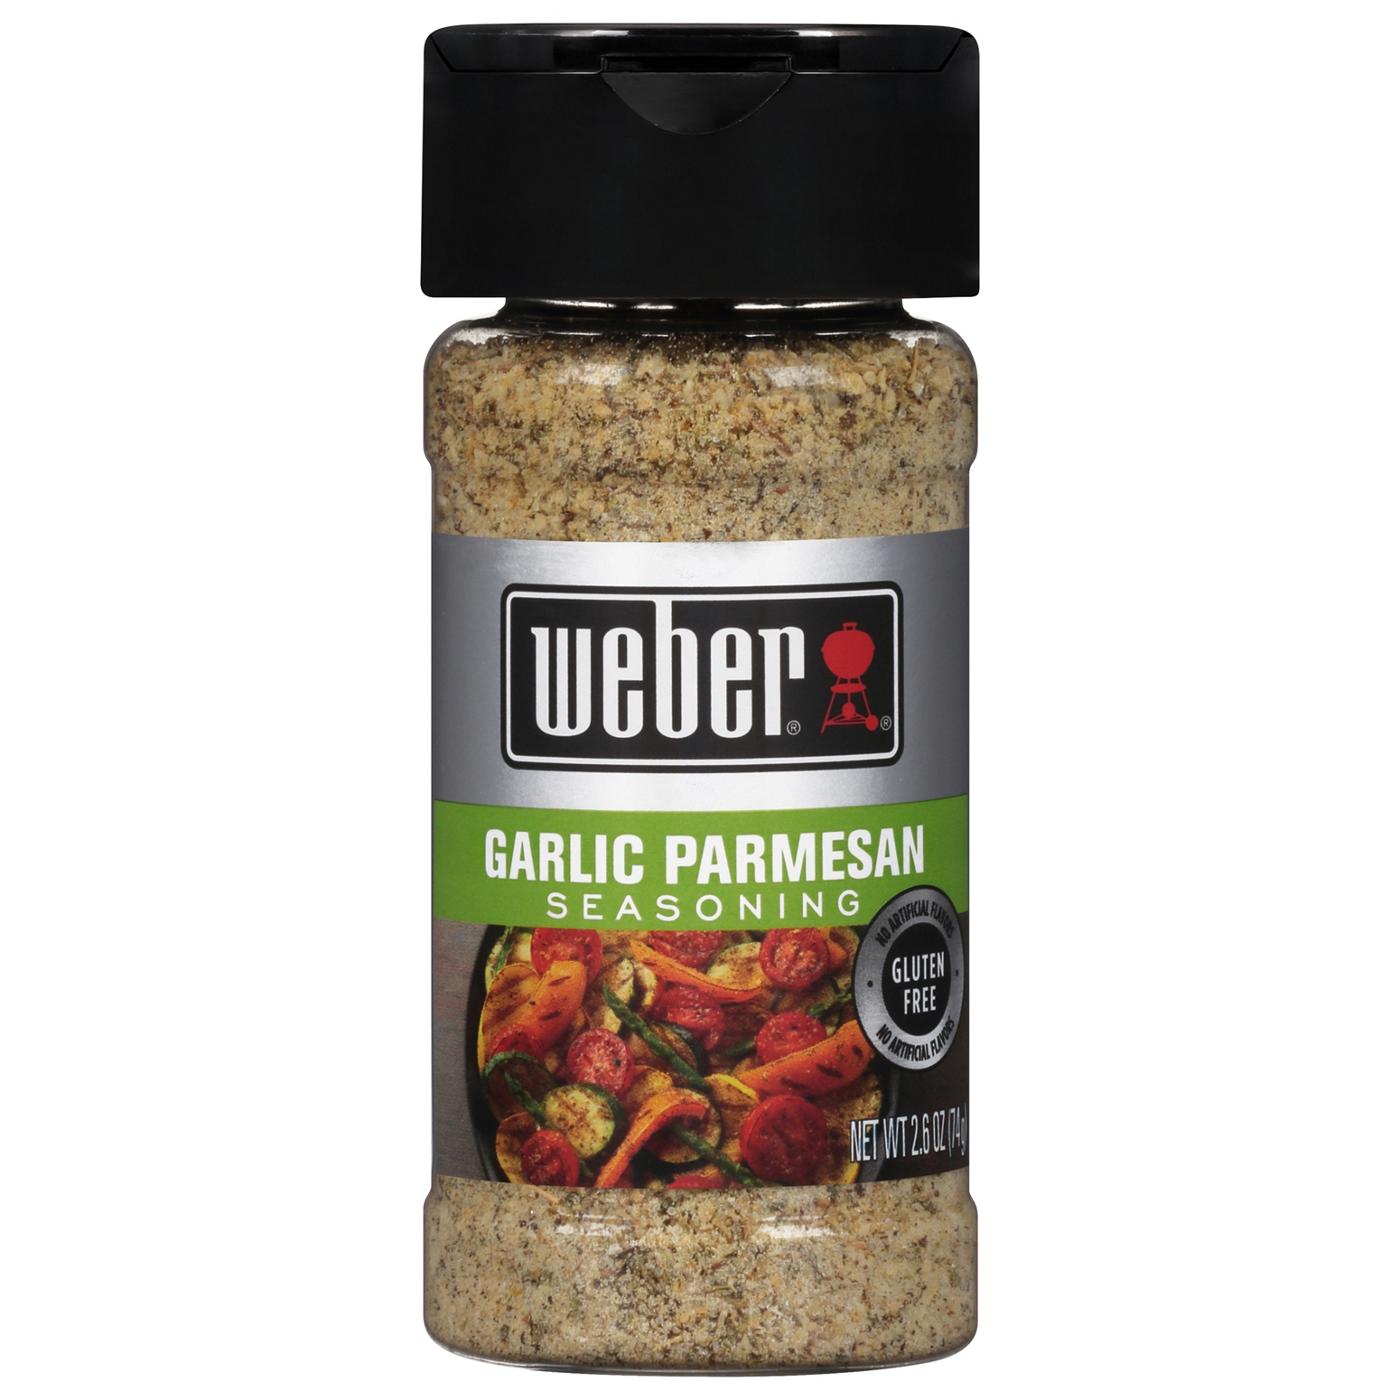 Weber Garlic Parmesan Seasoning; image 1 of 3